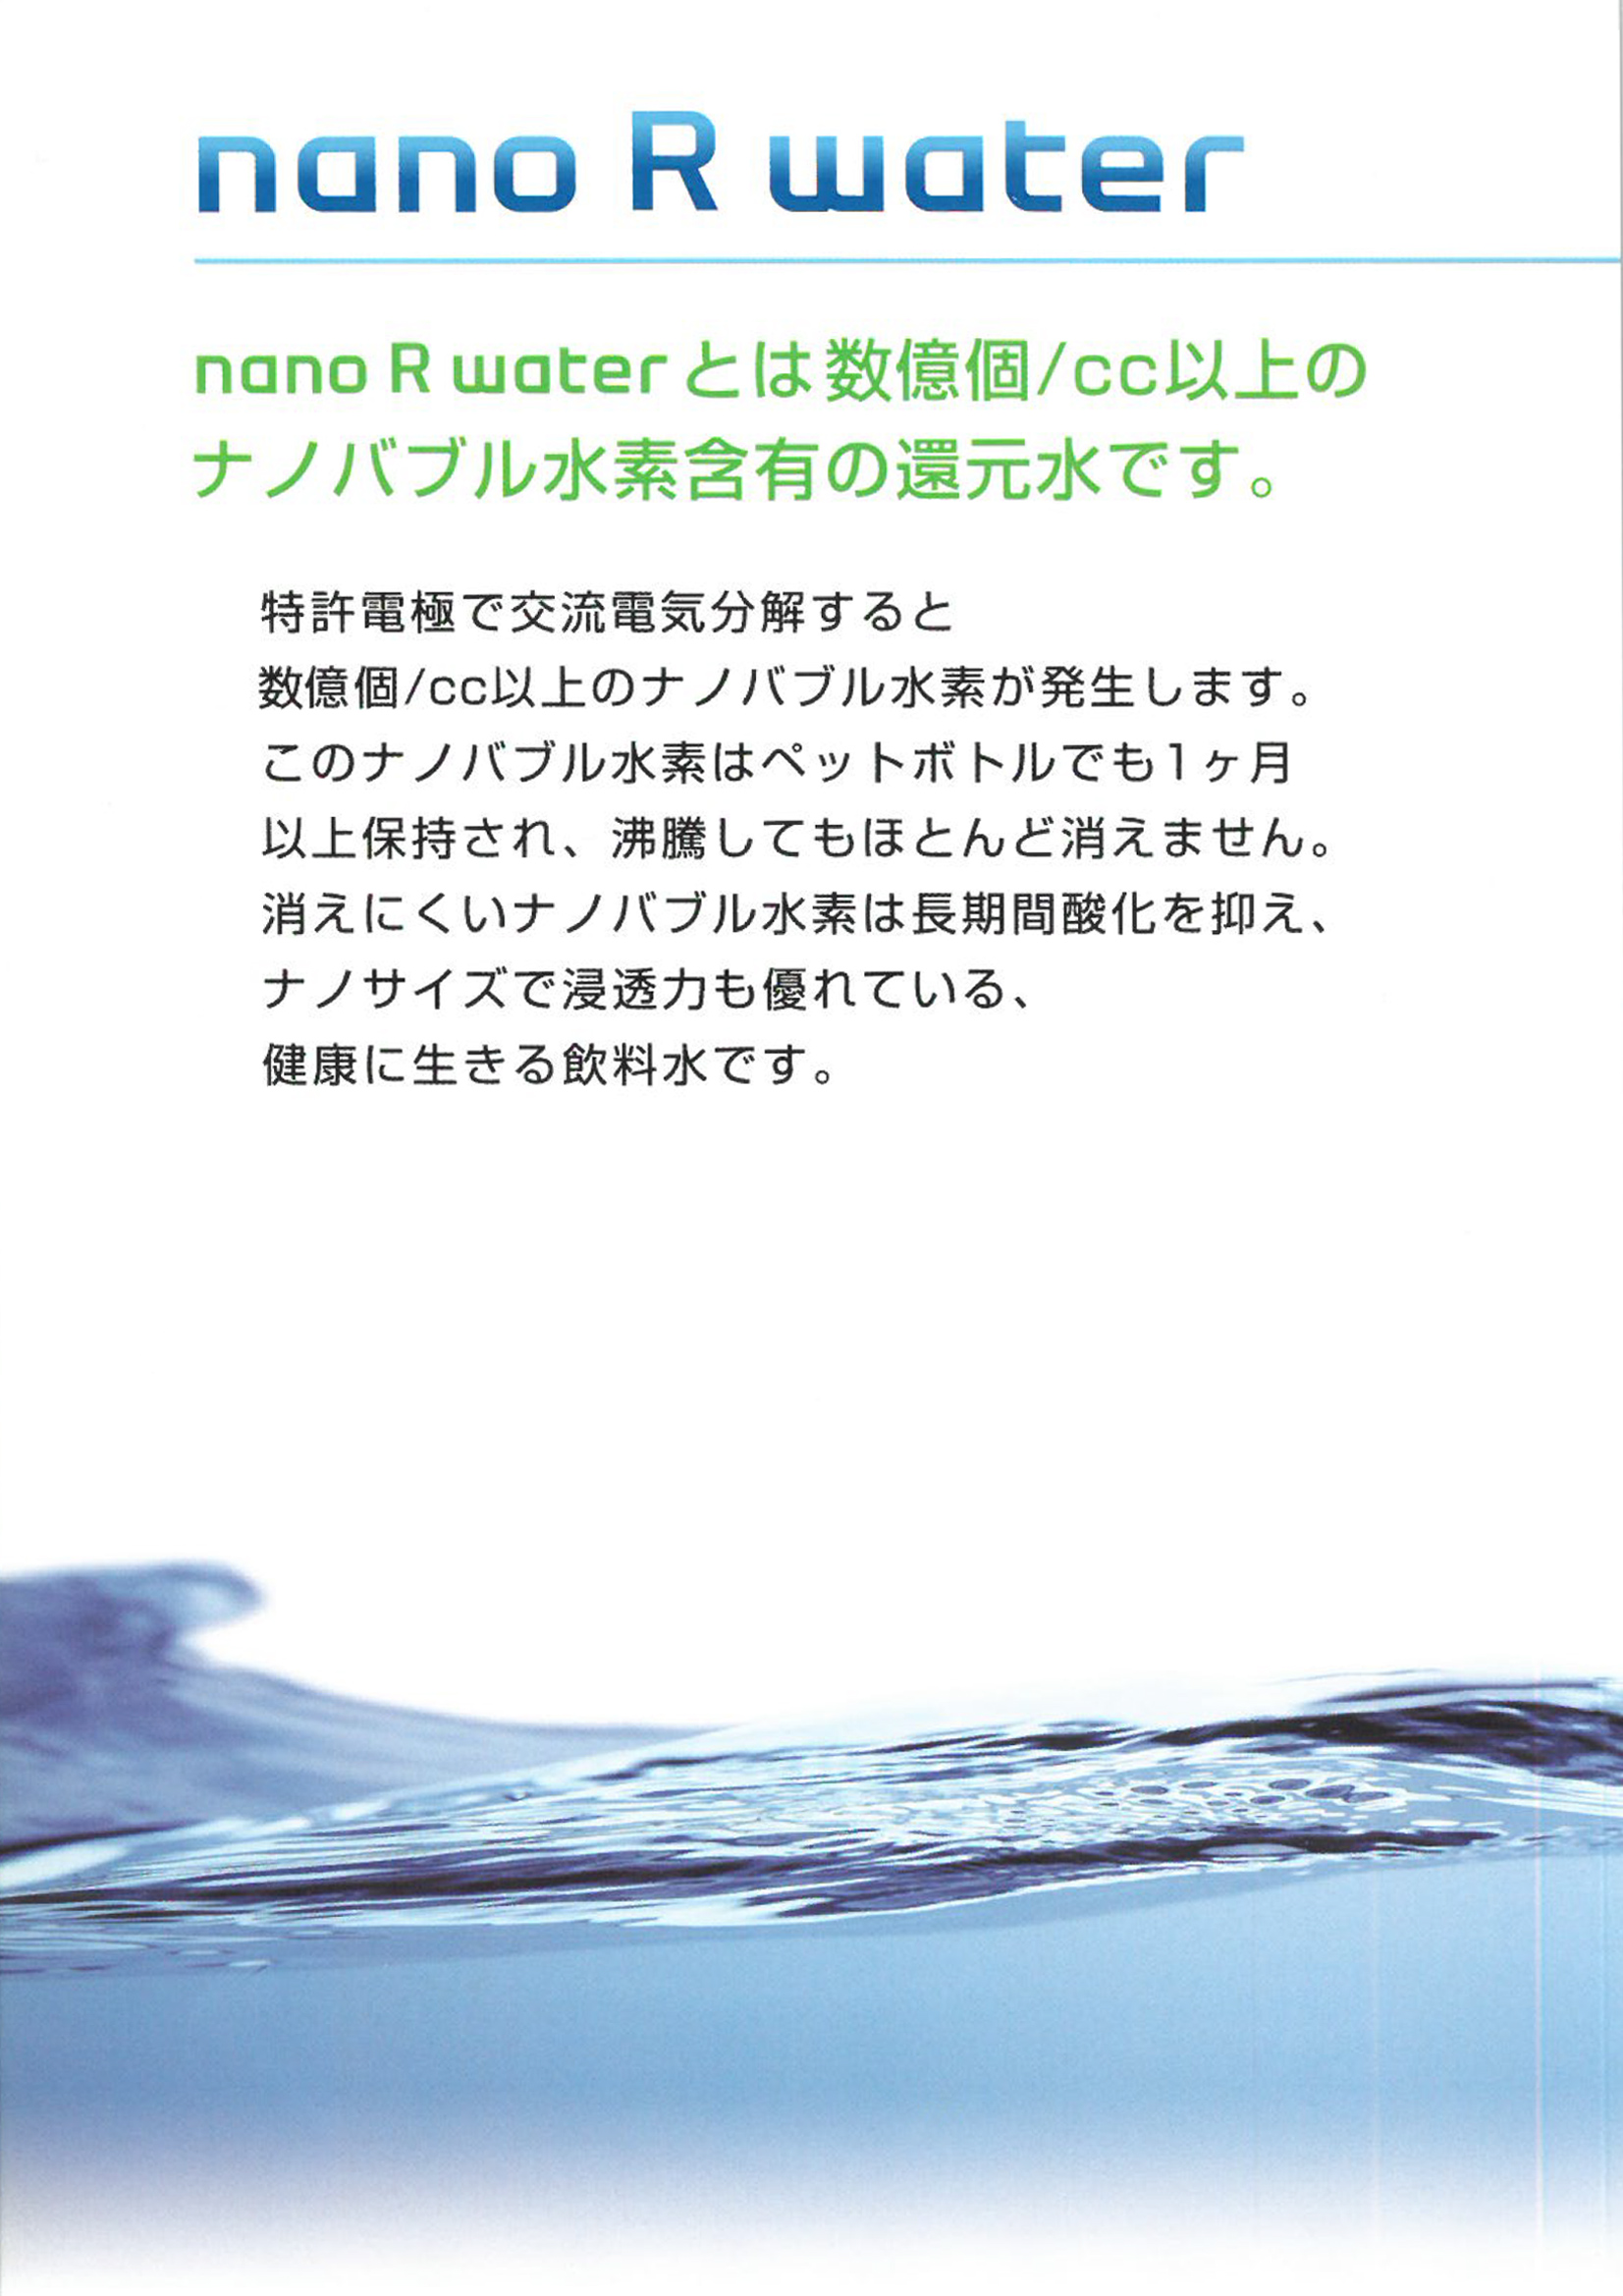 nanoRwater